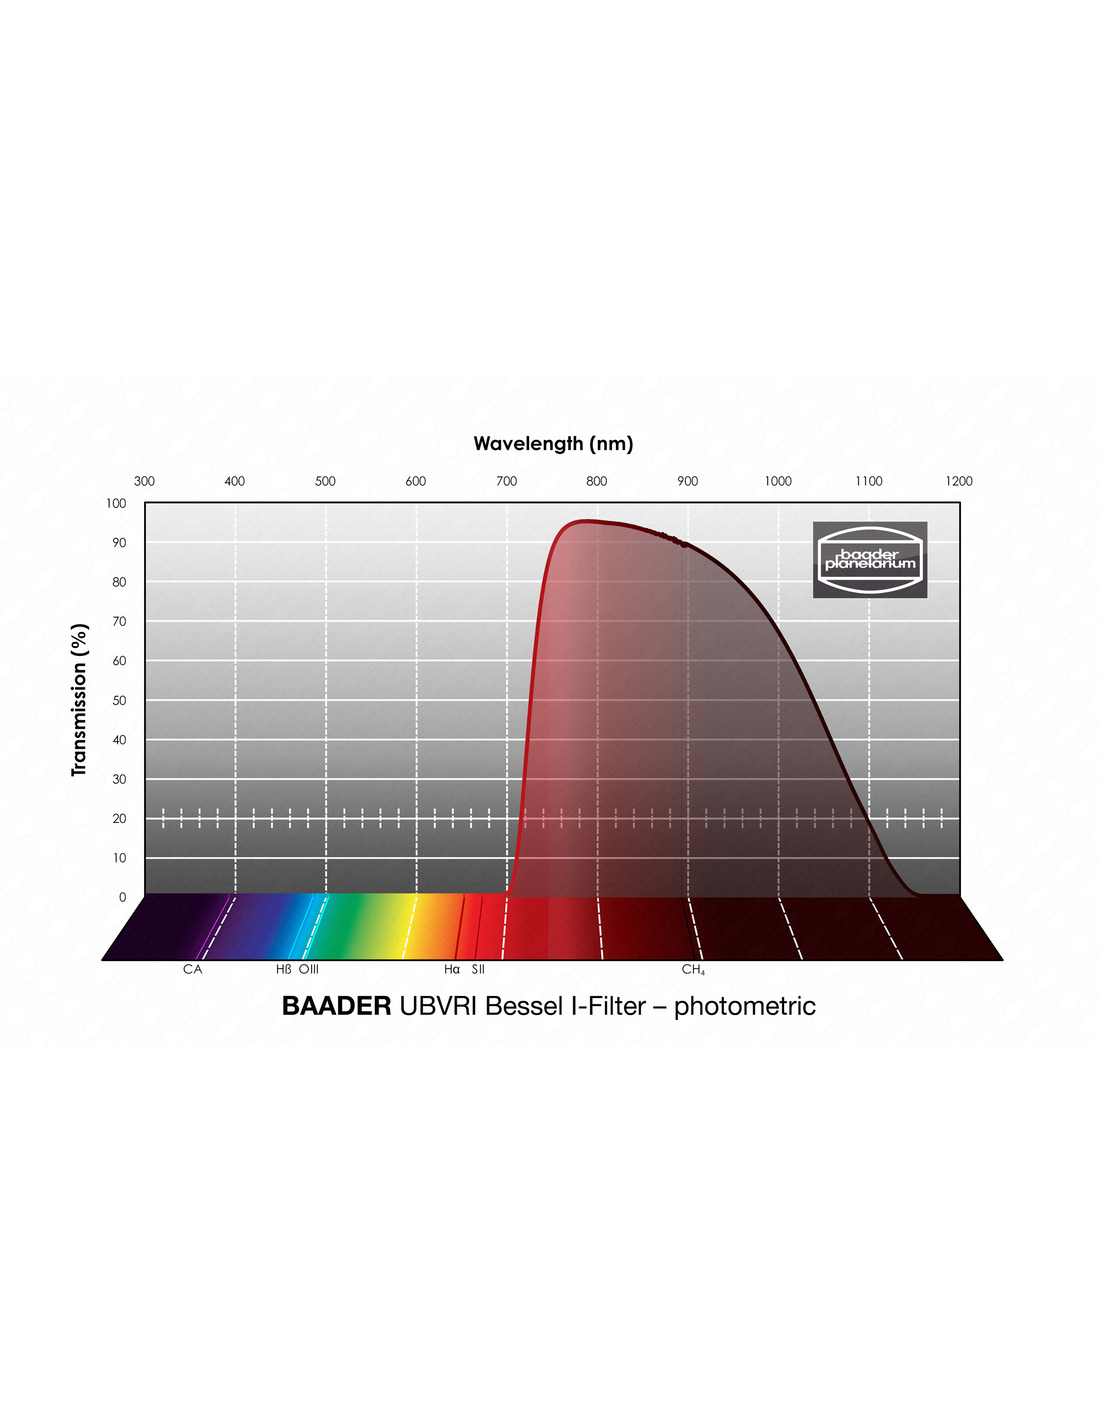  Baader UBVRI Bessel I-Filter 1.25" Filtro fotometrico classico con trasmissione secondo Bessel parafocale con tutti i filtri Baader della stessa dimensione 